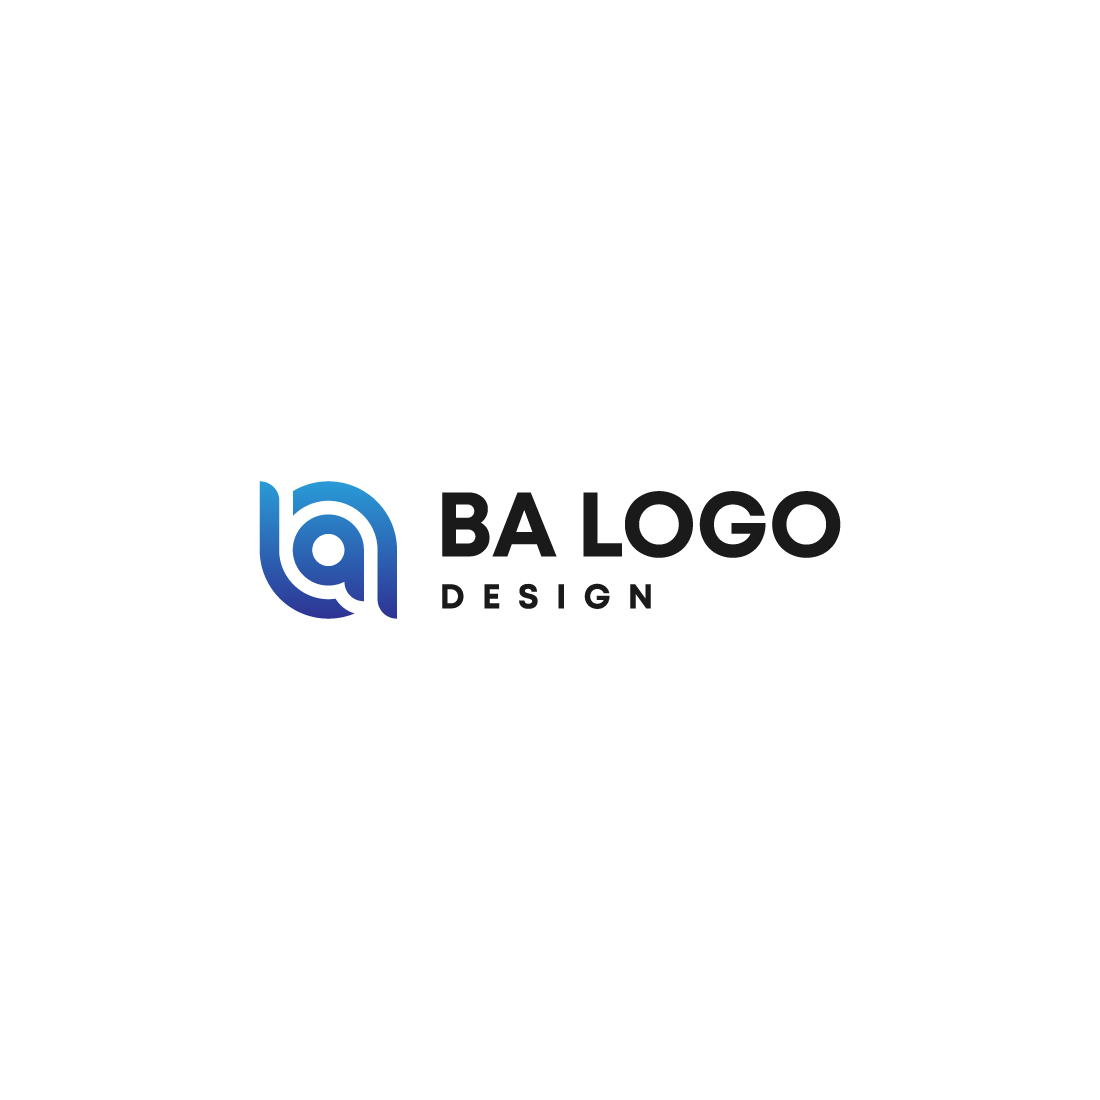 BA logo Design preview image.